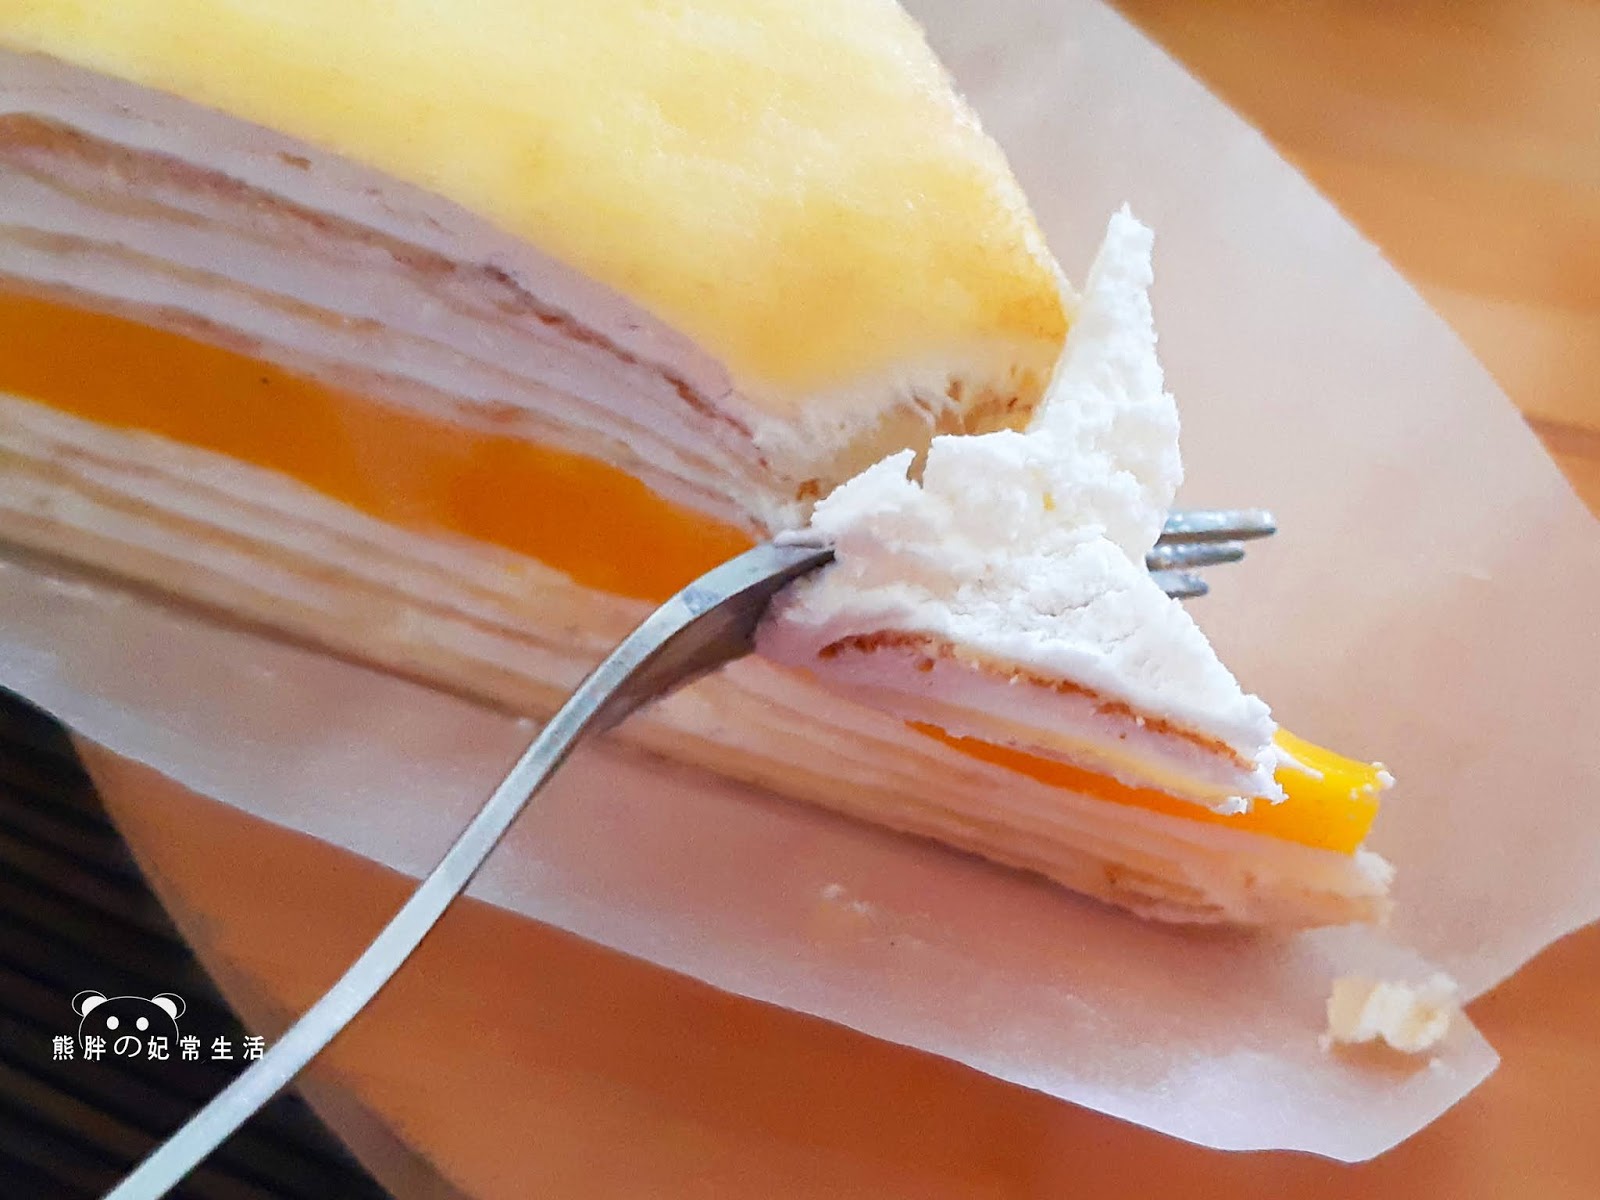 塔吉特-千層蛋糕